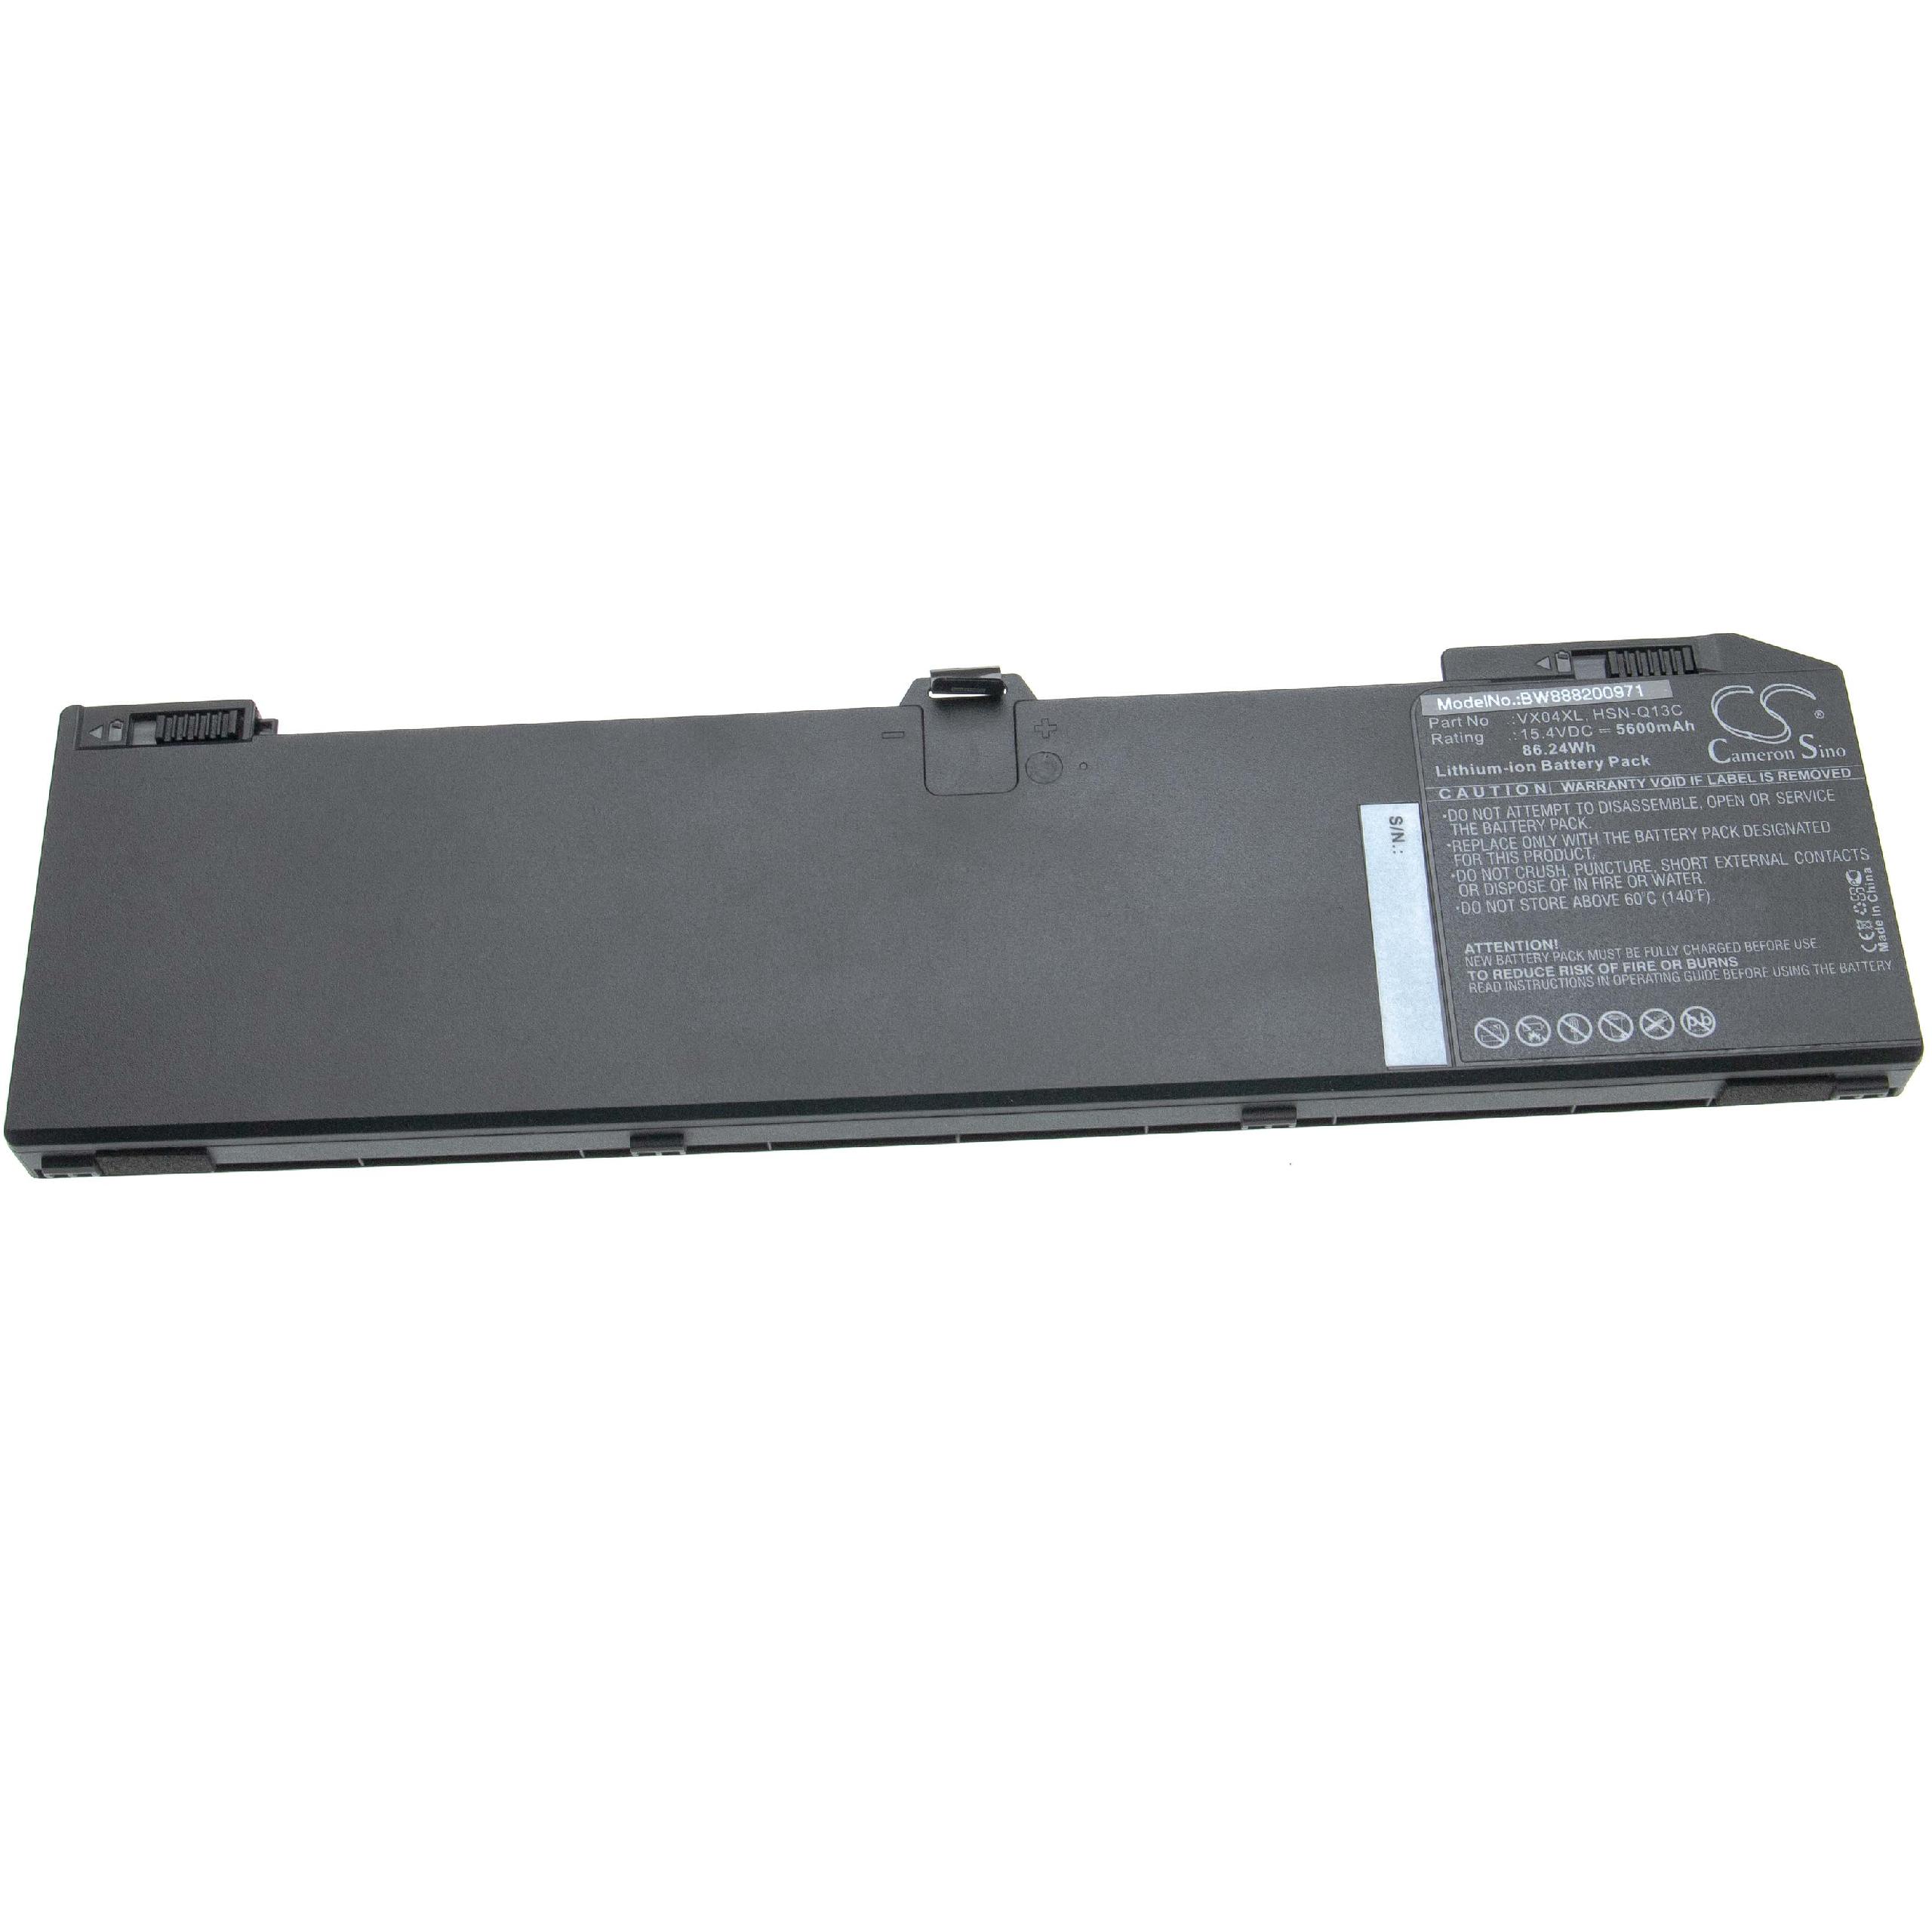 Notebook Battery Replacement for HP 4ME79AA, HSN-Q13C, HSTNNIB8F, HSNQ13C - 5600mAh 15.4V Li-Ion, black